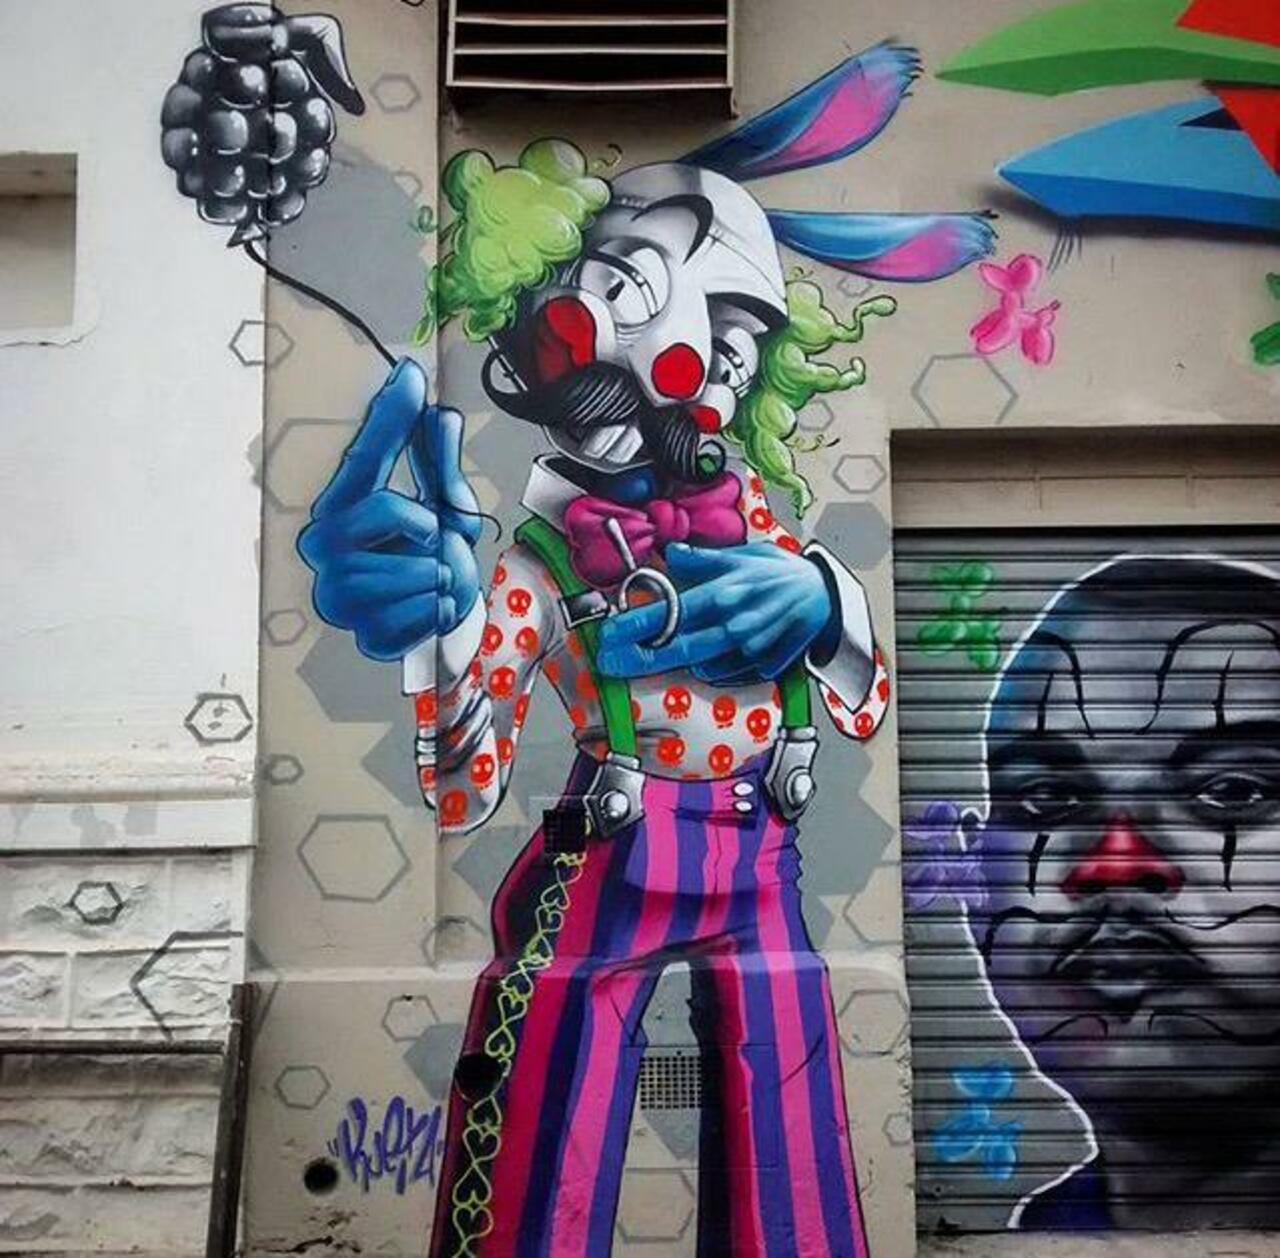 New Street Art by Karen Kueia 

#art #graffiti #mural #streetart http://t.co/rQLhswBs5Q